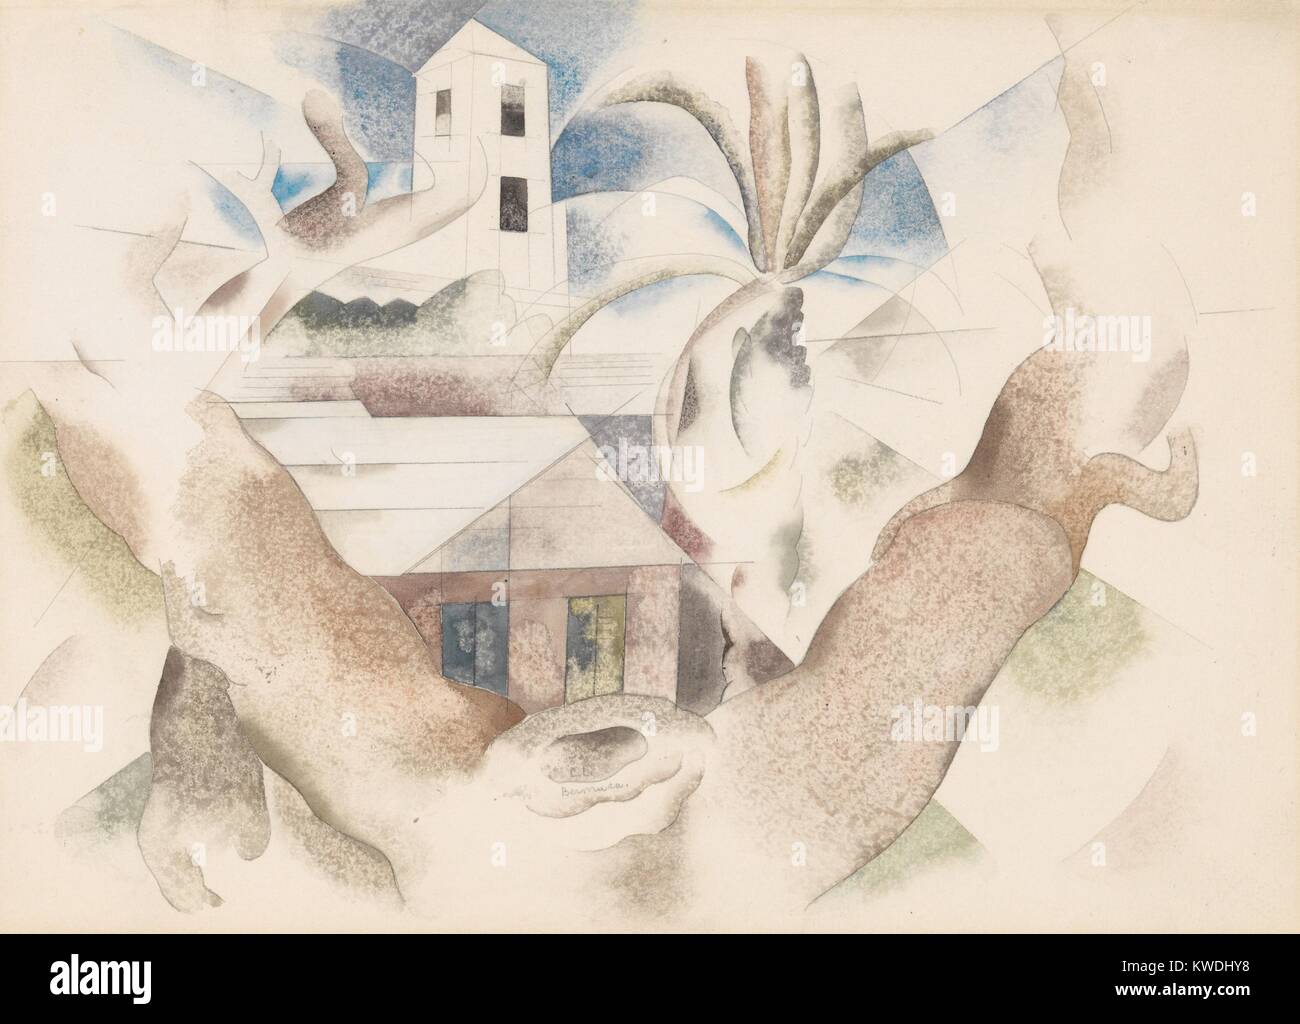 Les Bermudes n° 1, ARBRE ET MAISON, par Charles Demuth, 1917, American aquarelle et crayon. L'influence cubiste paysage avec des arbres et maisons (BSLOC 2017 7 92) Banque D'Images